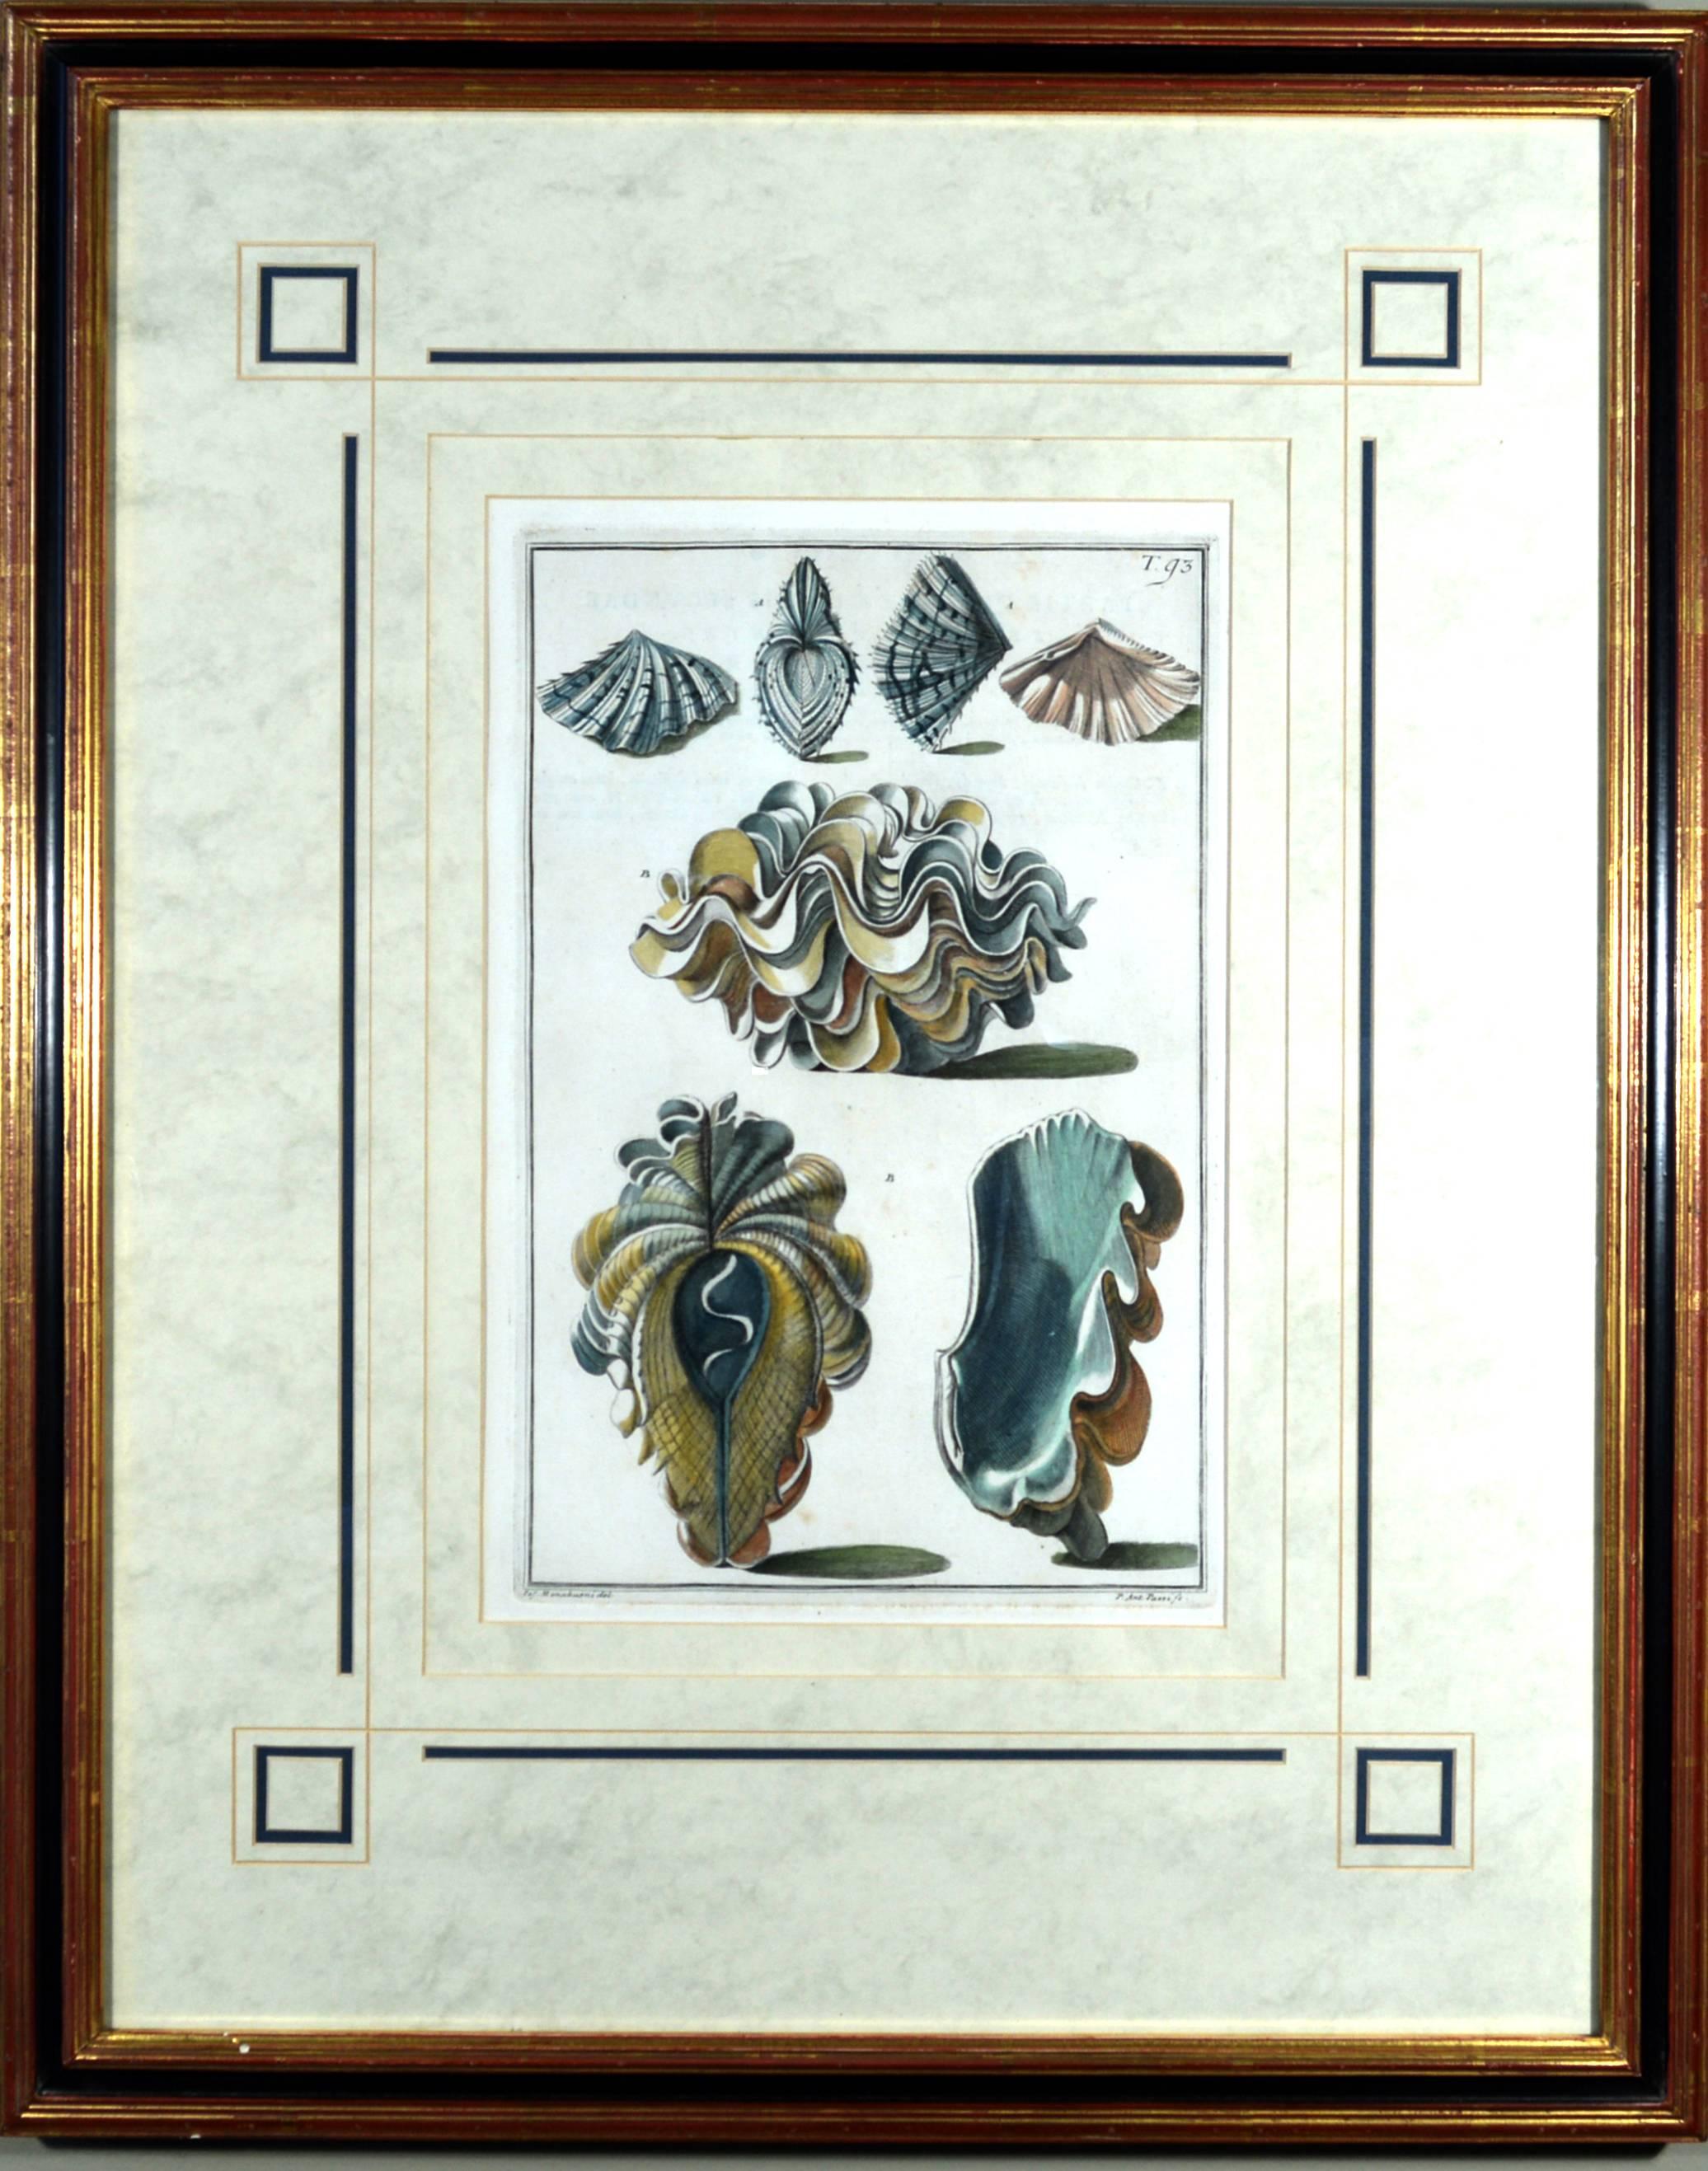 Muschelpaar mit Gravuren,
aus Index Testarum Conchyliorum von Niccolo Gualtieri,
Gestochen von Antonio Pazzi & Giuseppe Menabuoni,
1742.

Zwei gerahmte handkolorierte Muscheldrucke aus dem Index Testarum Conchyliorum von Niccolo Gualtieri,